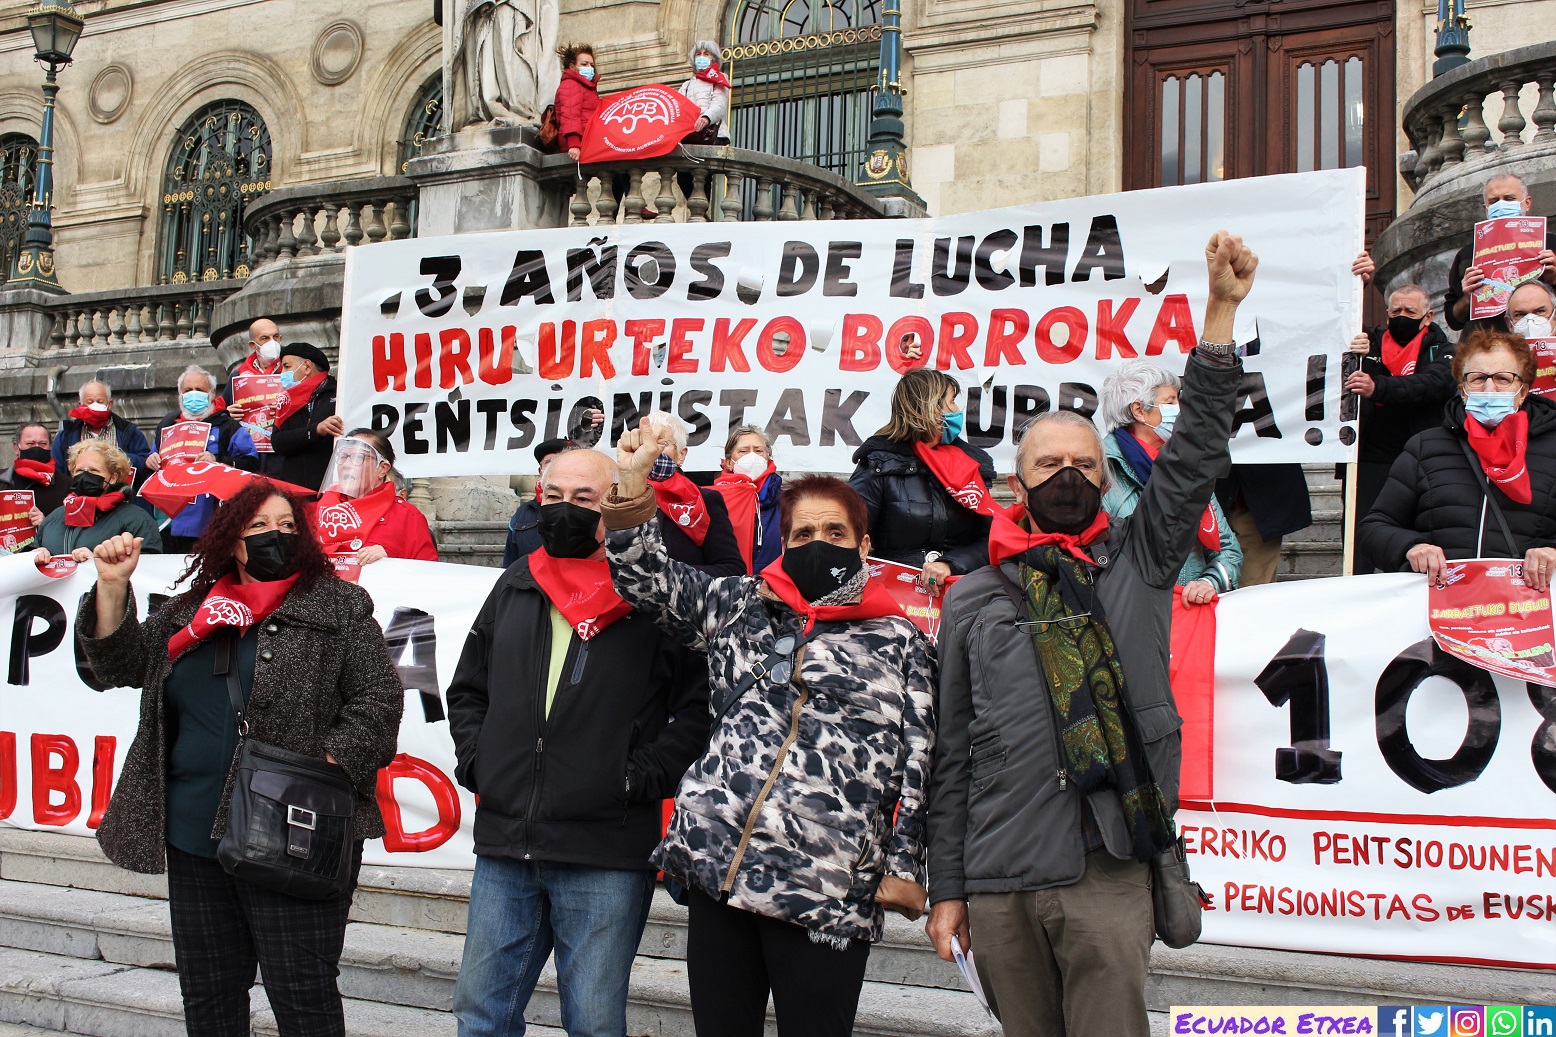 pensionistas-vascos-bilbao-euskalherria-manifestación-recomendaciones-pacto-toledo-gobierno-neoliberal-reformas